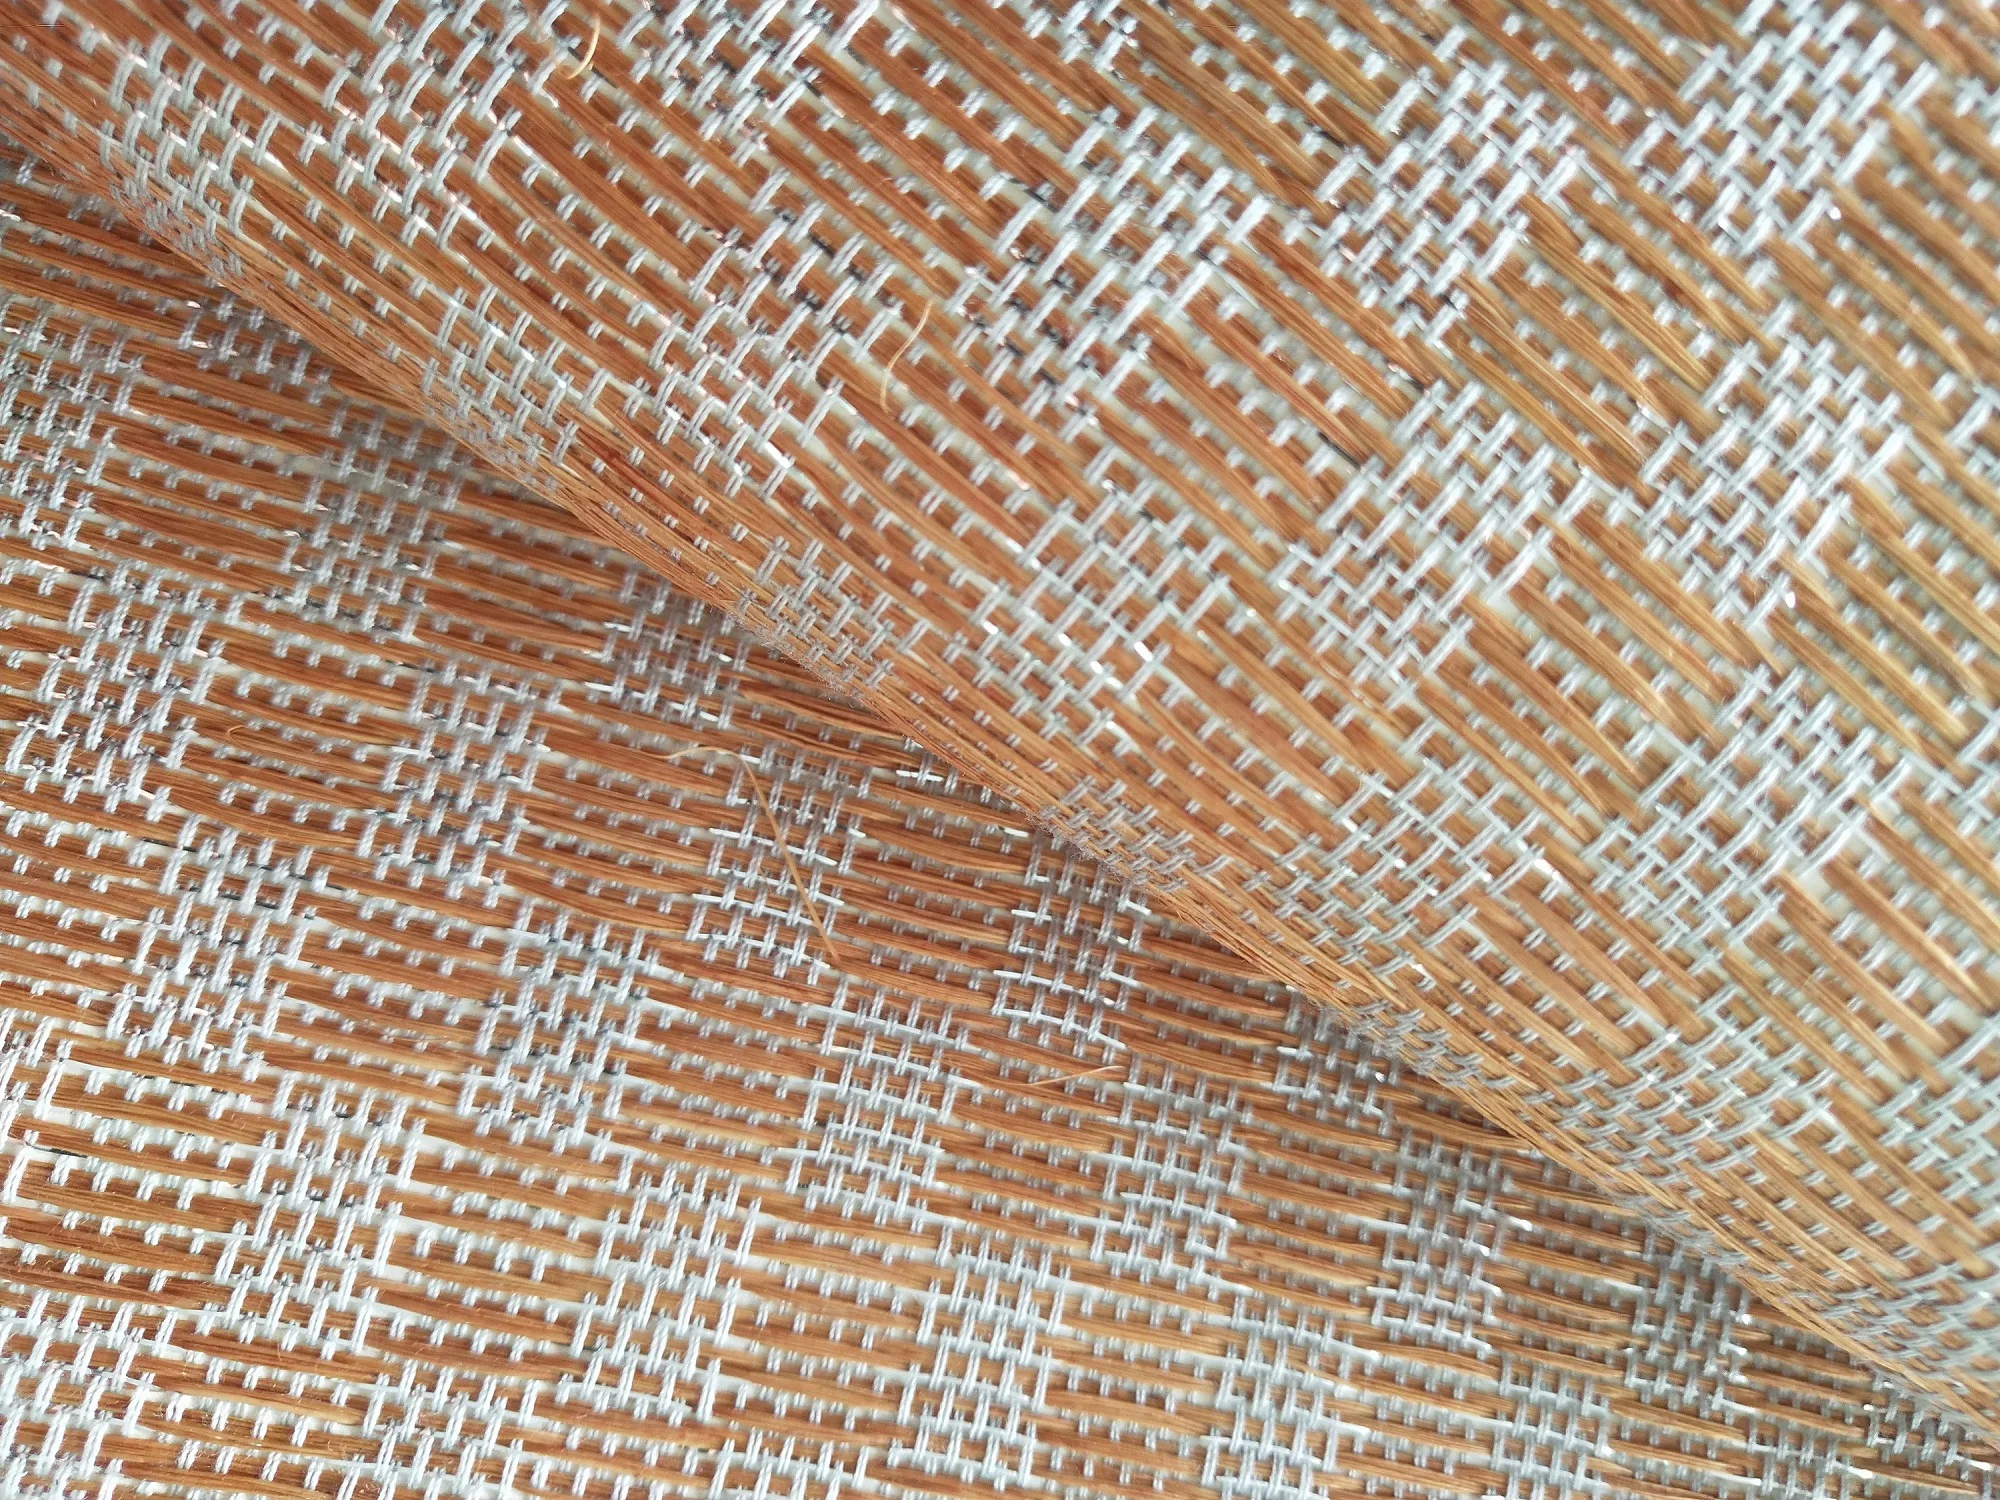 ユニークなデザインのわら織布壁紙天然わらロープ材料は家の装飾のために使用 Buy わらロープ織りの壁紙 ユニークなデザイン 家の装飾 Product On Alibaba Com